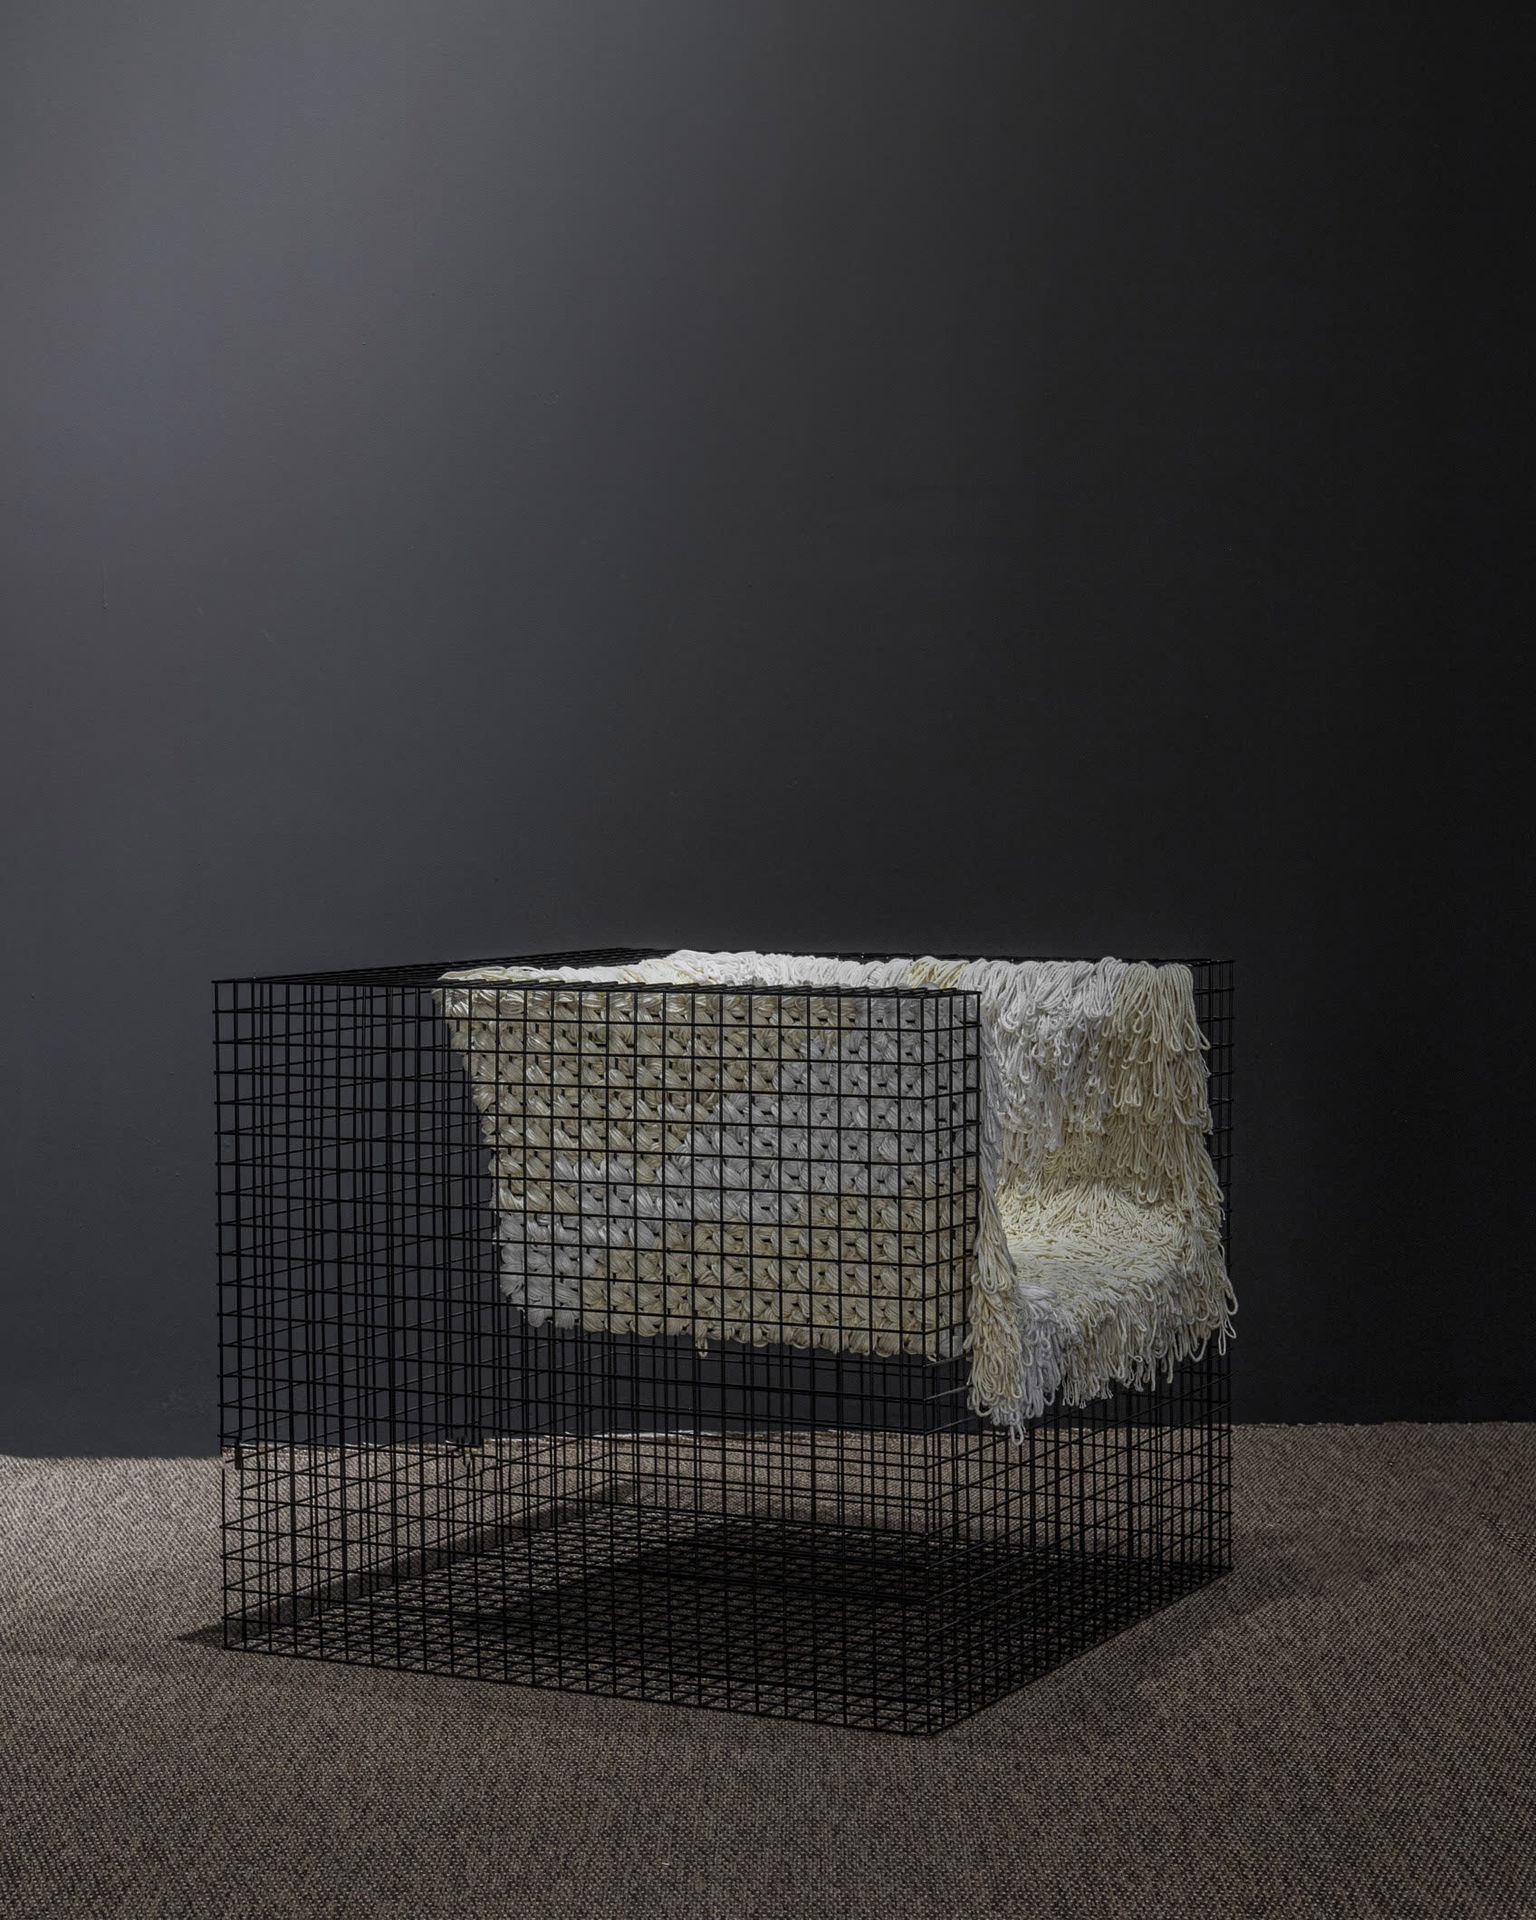 GEDION KIM Armchair
Wire, cotton thread
2019
H 66 W 78 D 80 cm
Provenance: Iham &hellip;